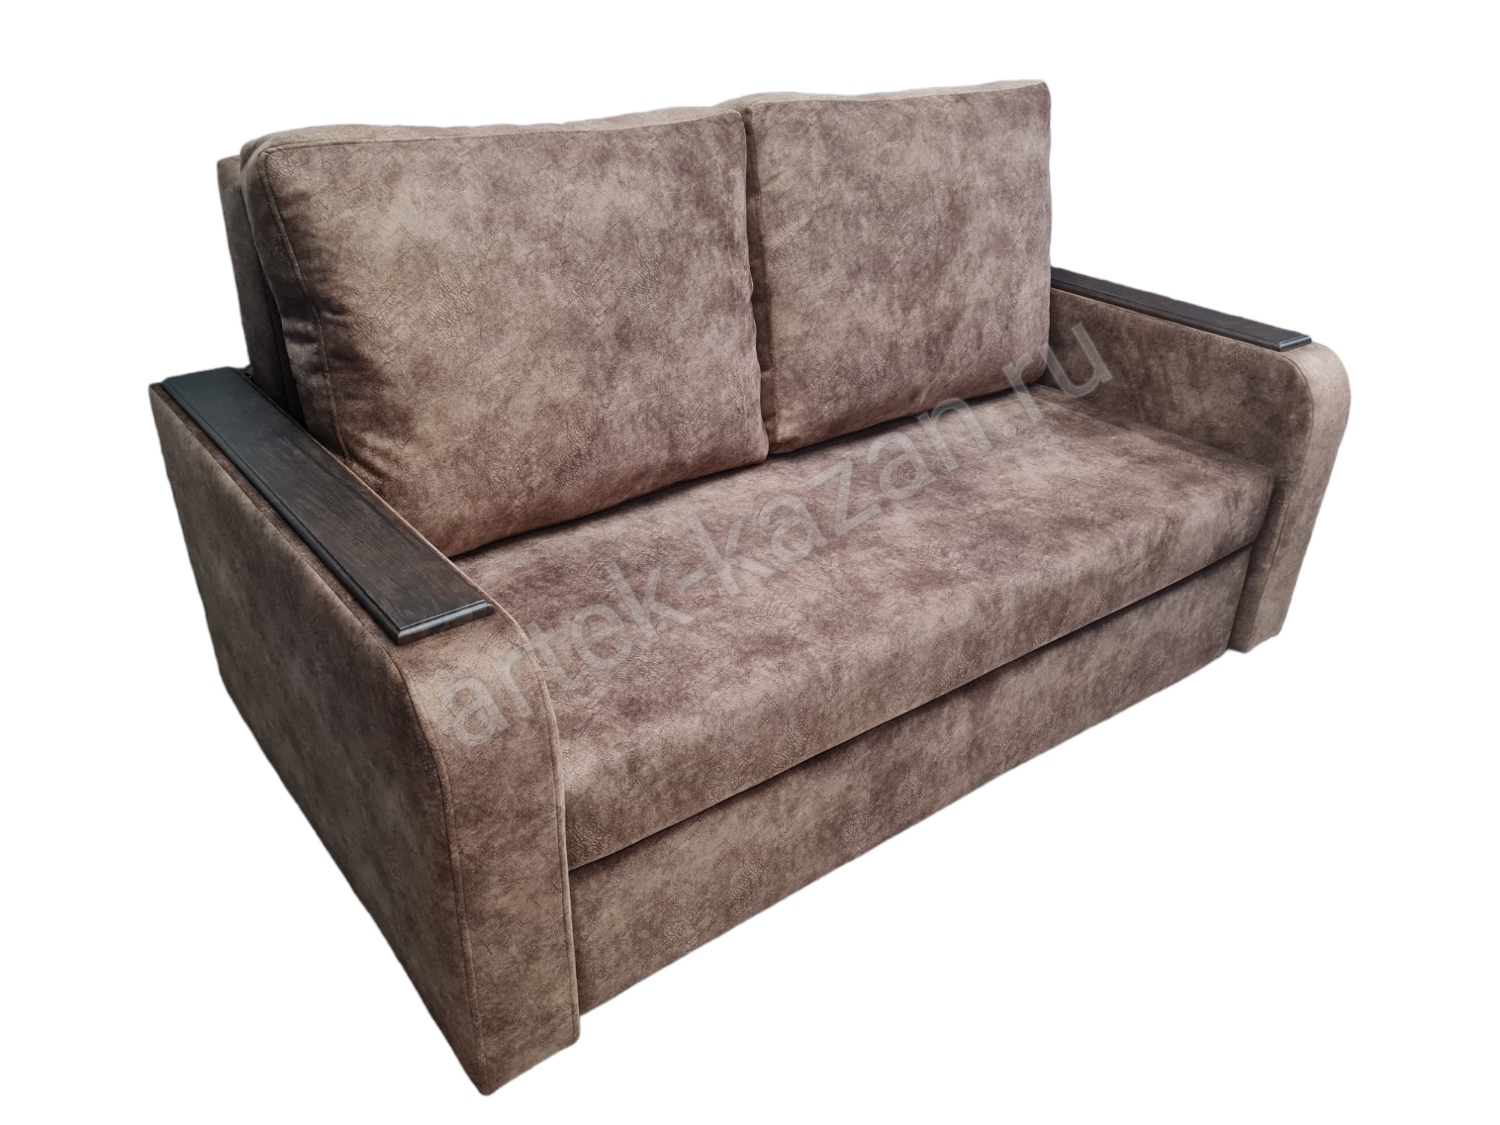 Фото 2. Купить недорогой диван по низкой цене от производителя можно у нас.